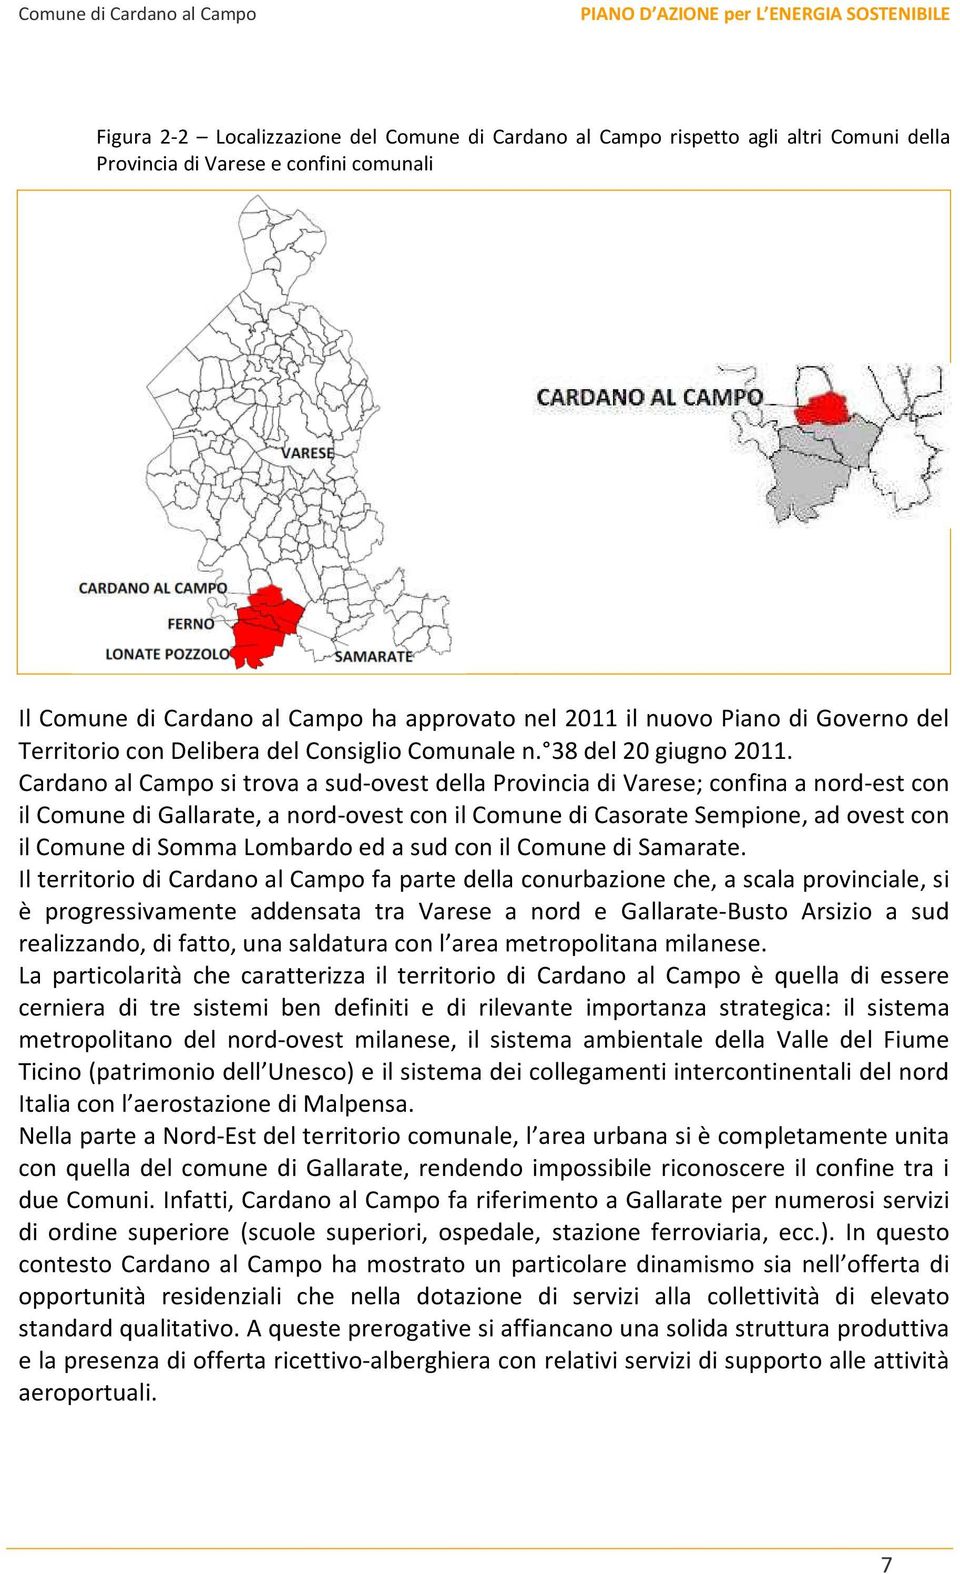 Cardano al Campo si trova a sud-ovest della Provincia di Varese; confina a nord-est con il Comune di Gallarate, a nord-ovest con il Comune di Casorate Sempione, ad ovest con il Comune di Somma